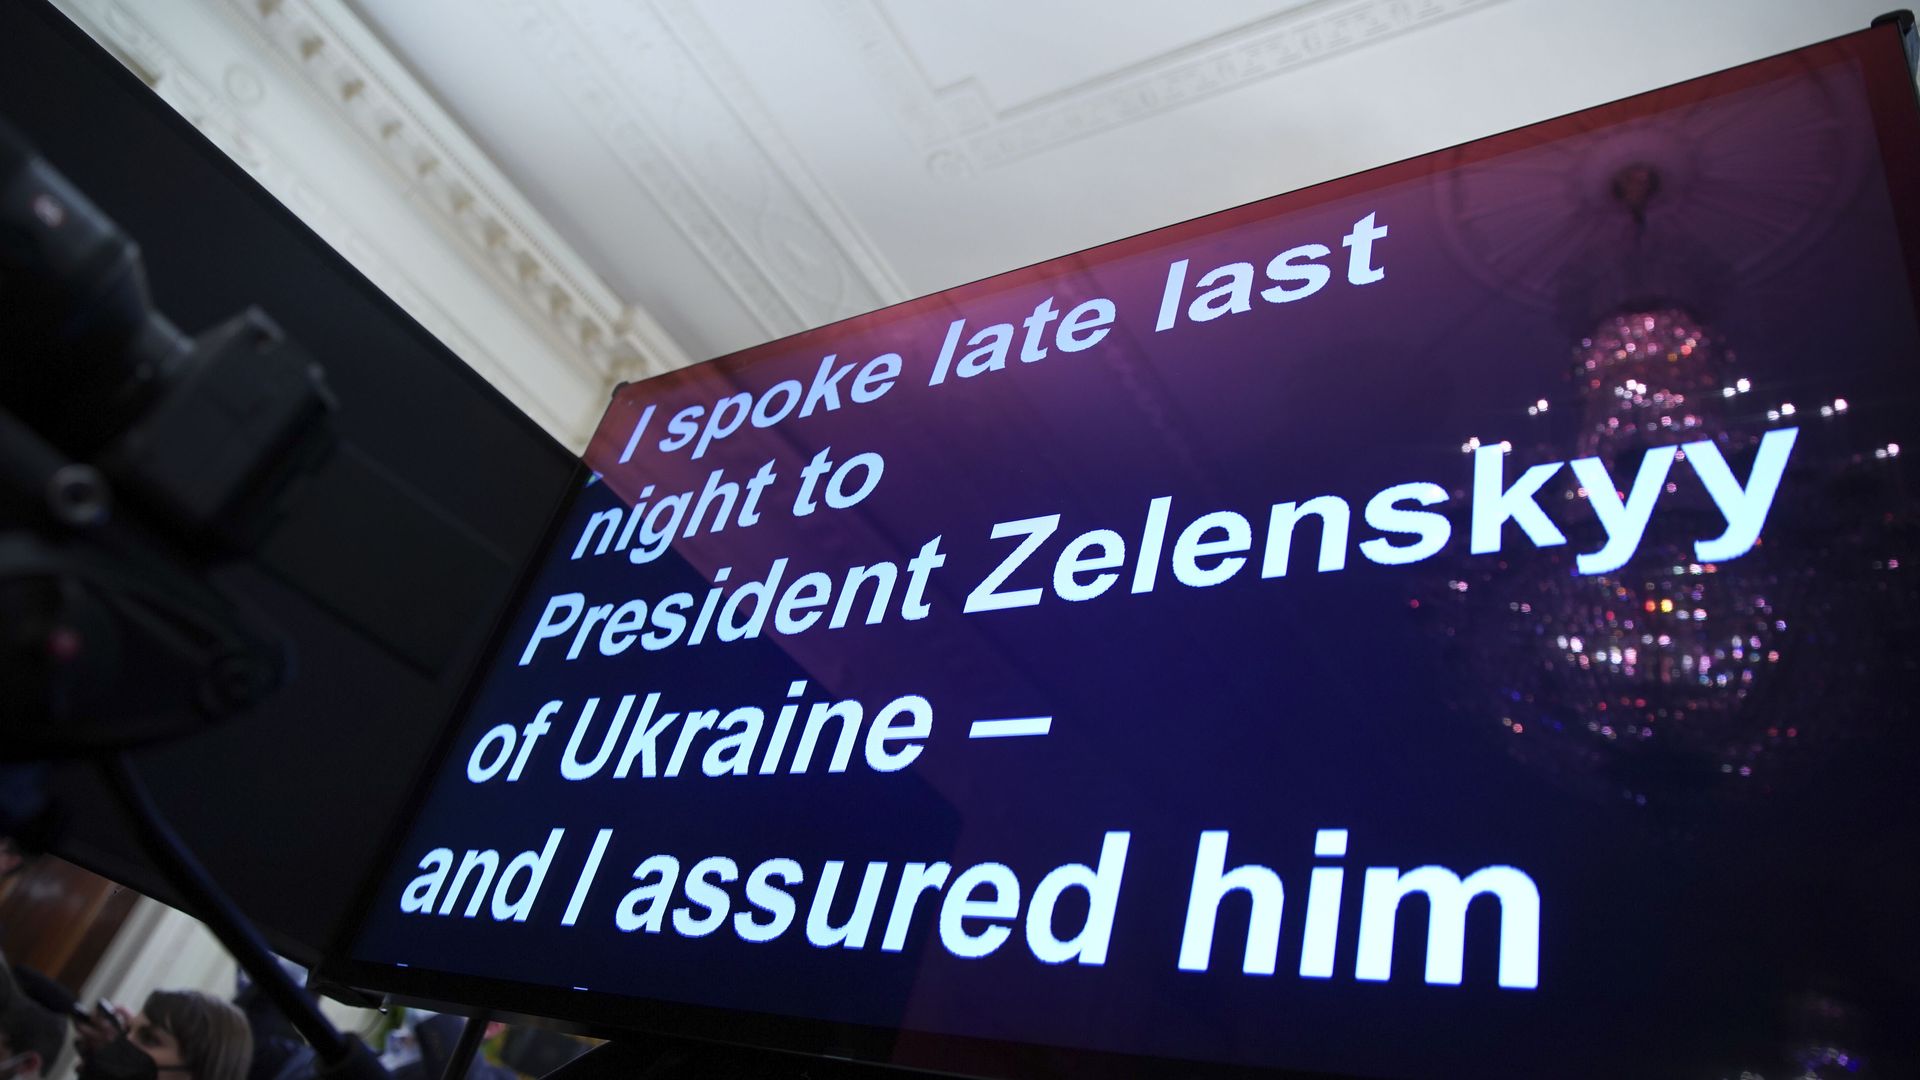 A TelePrompTer shows part of President Biden's Ukraine remarks on Thursday.